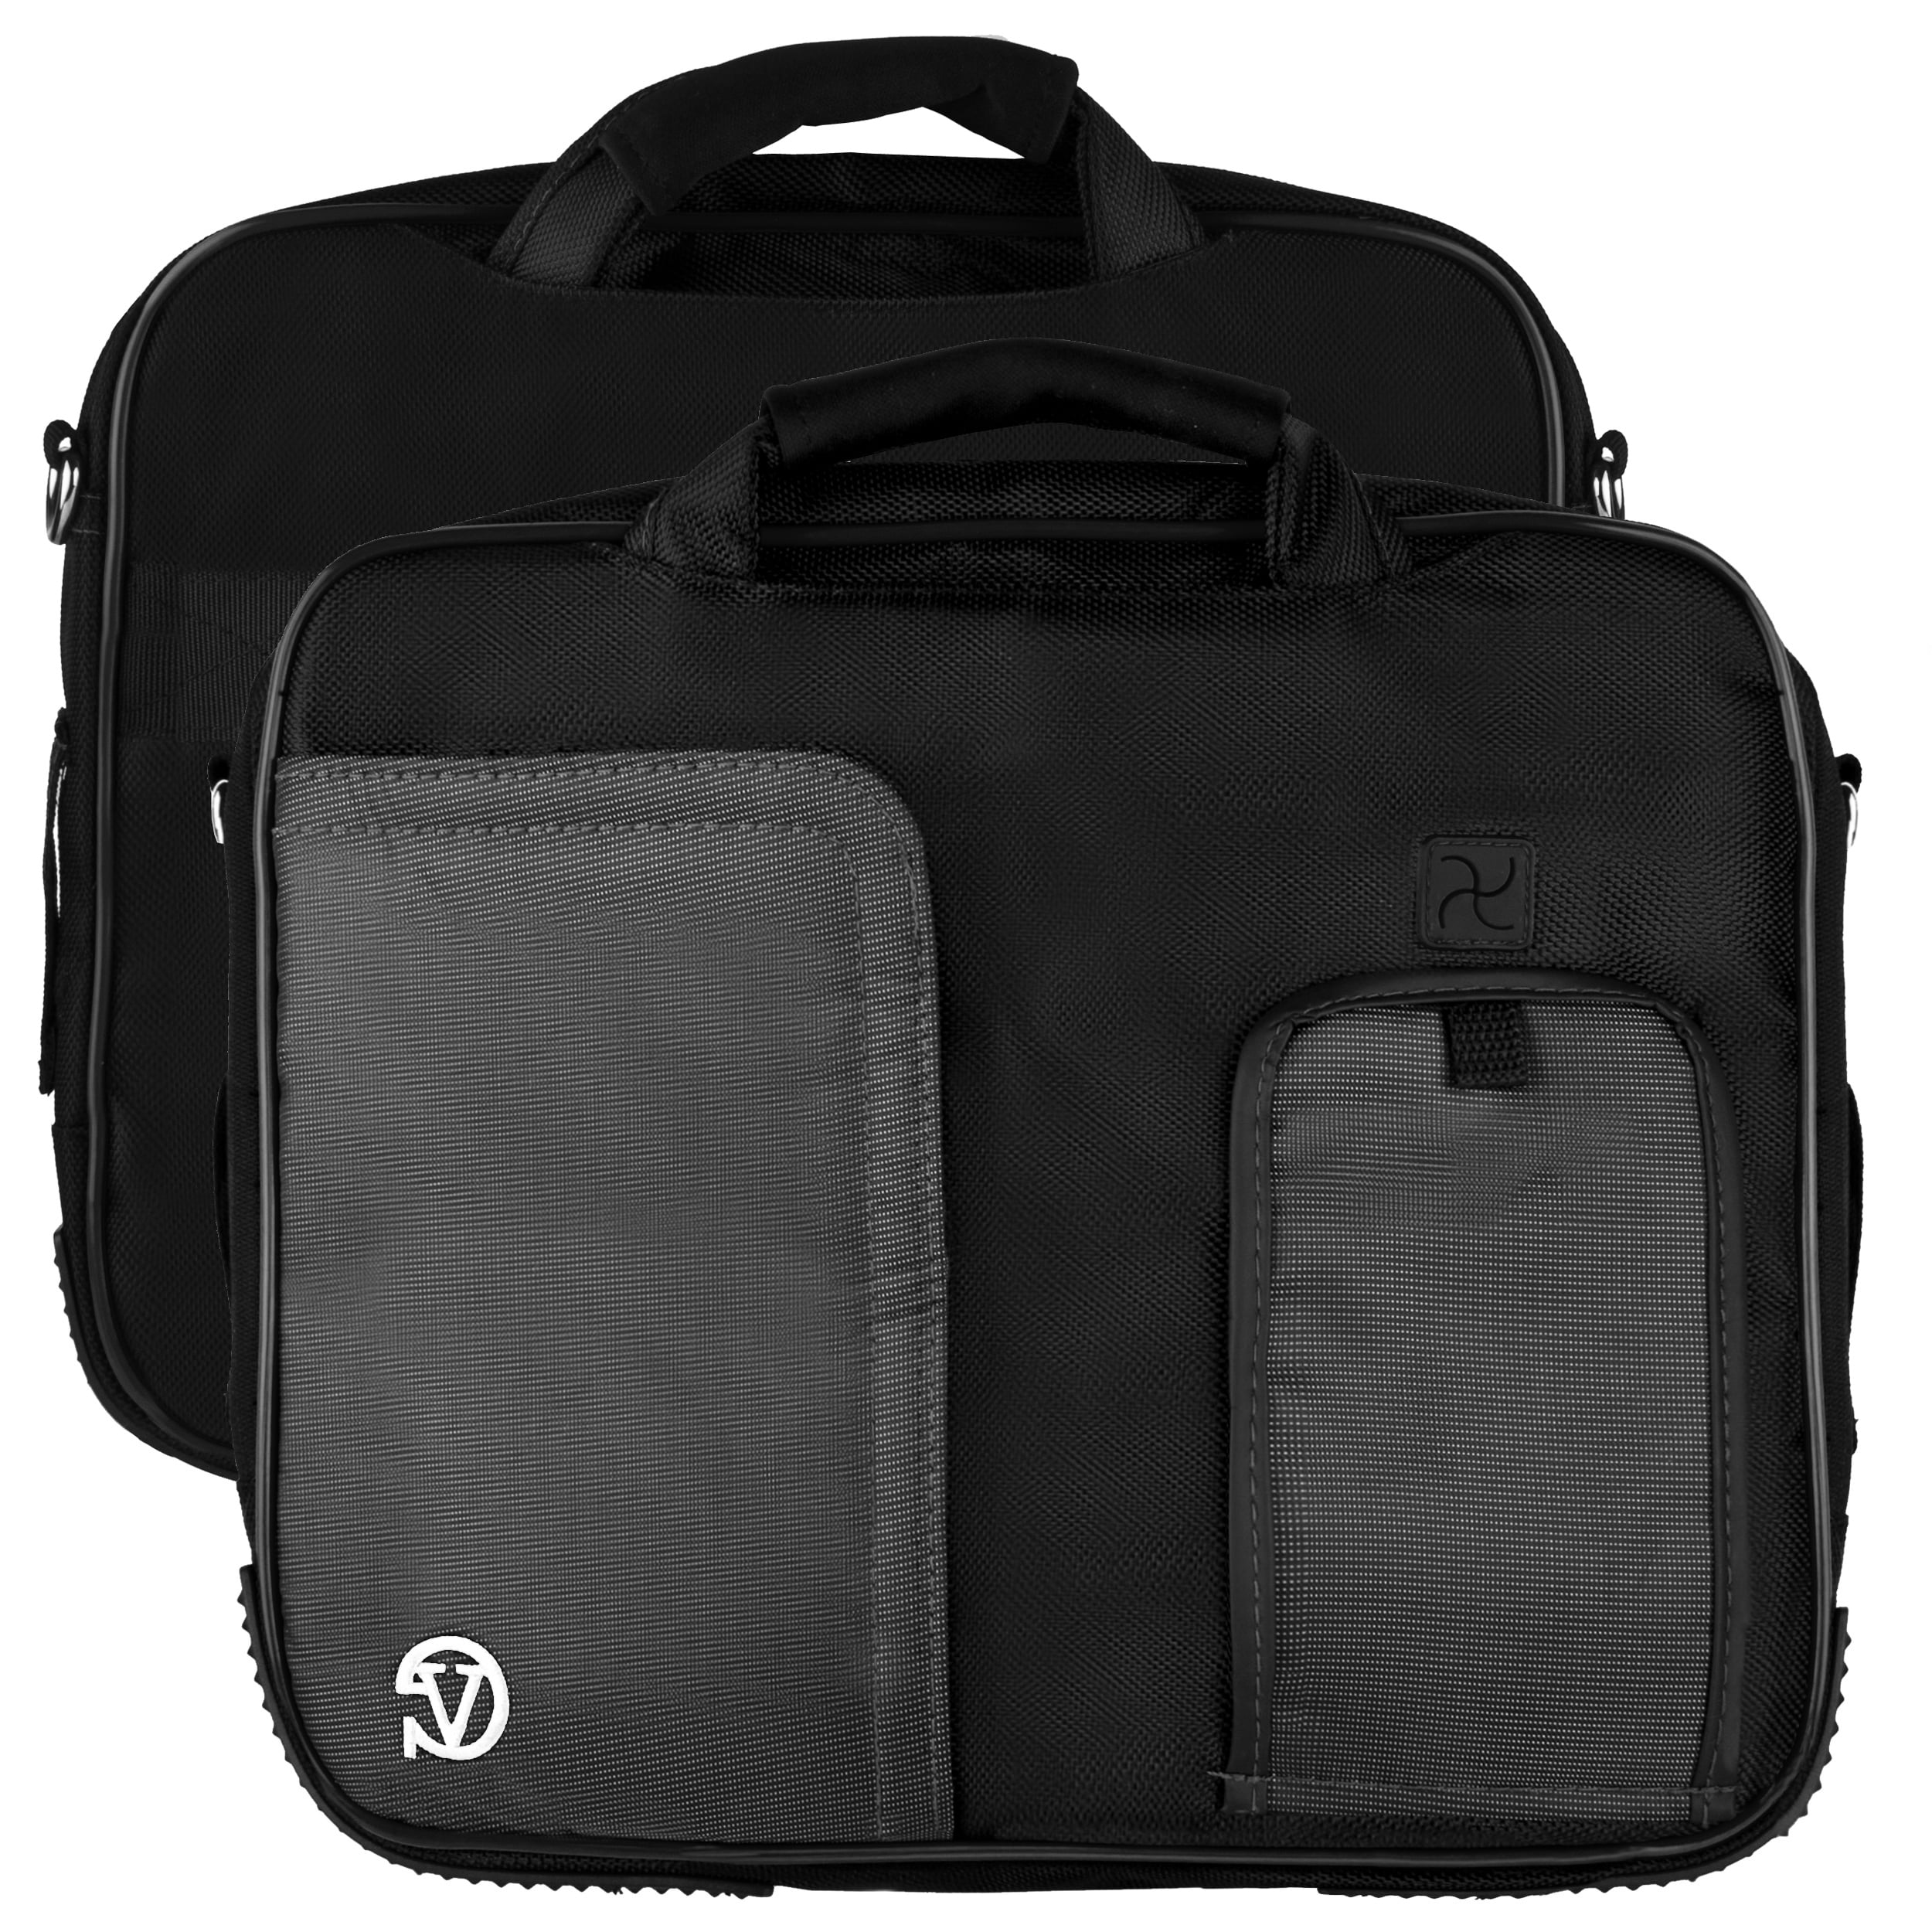 Pindar Messenger Nylon Carry Shoulder Cover Bag Case For HP Pavilion 15.6 Laptop 